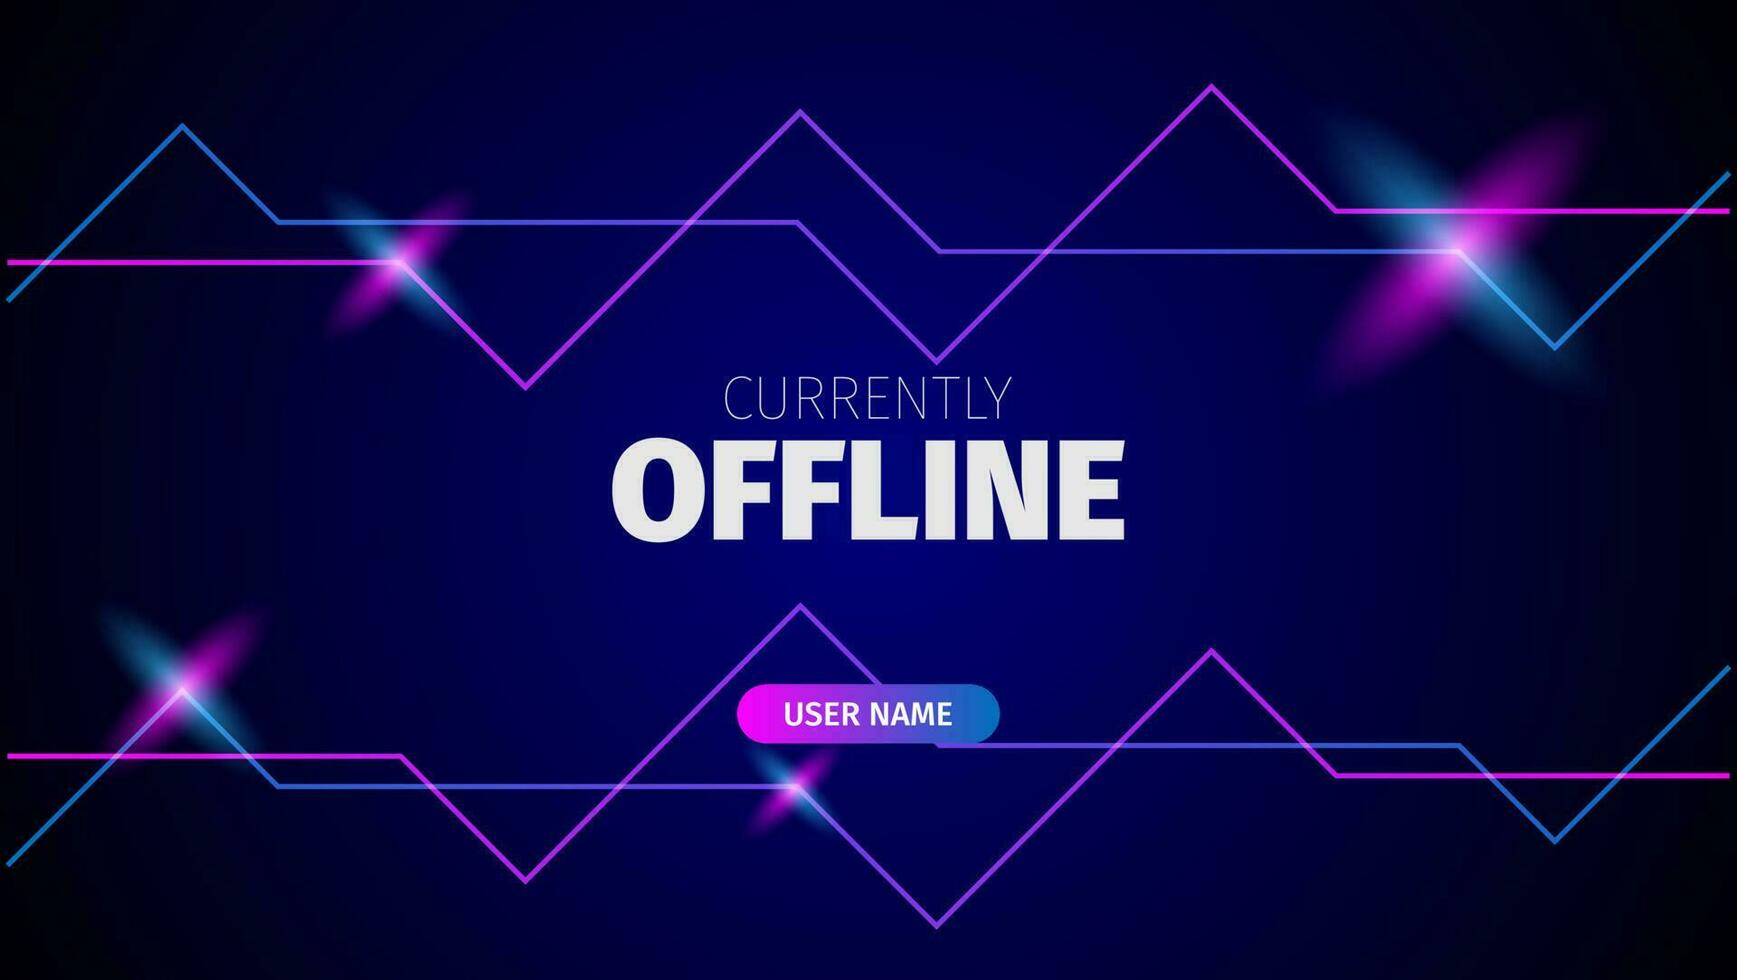 fundo de banner de streaming offline com luz de néon azul e rosa vetor